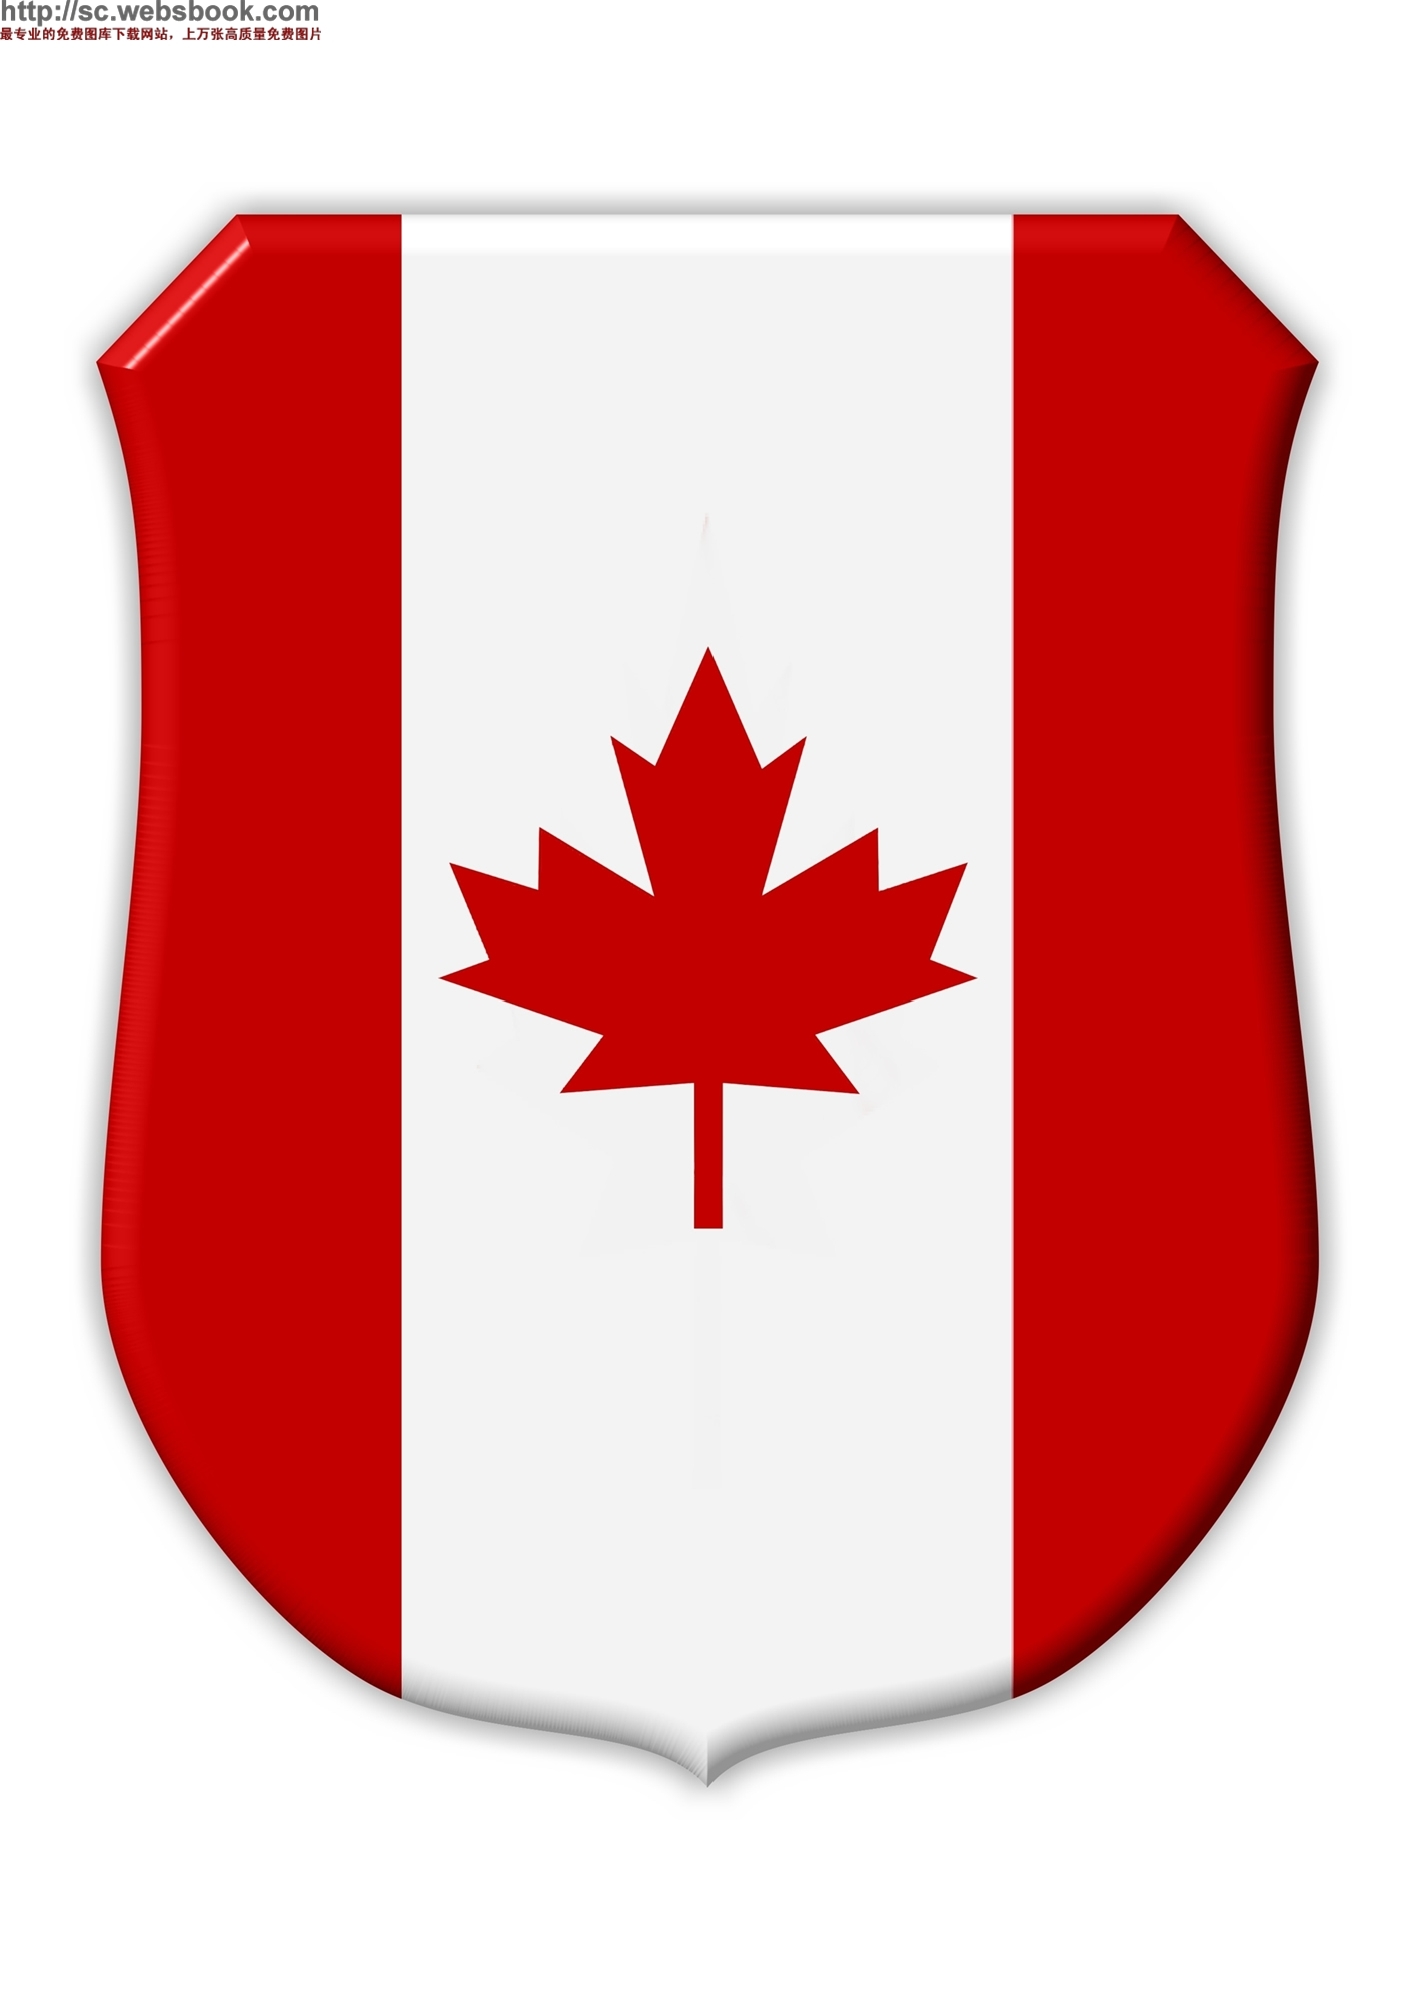 加拿大国旗图片 图标图片